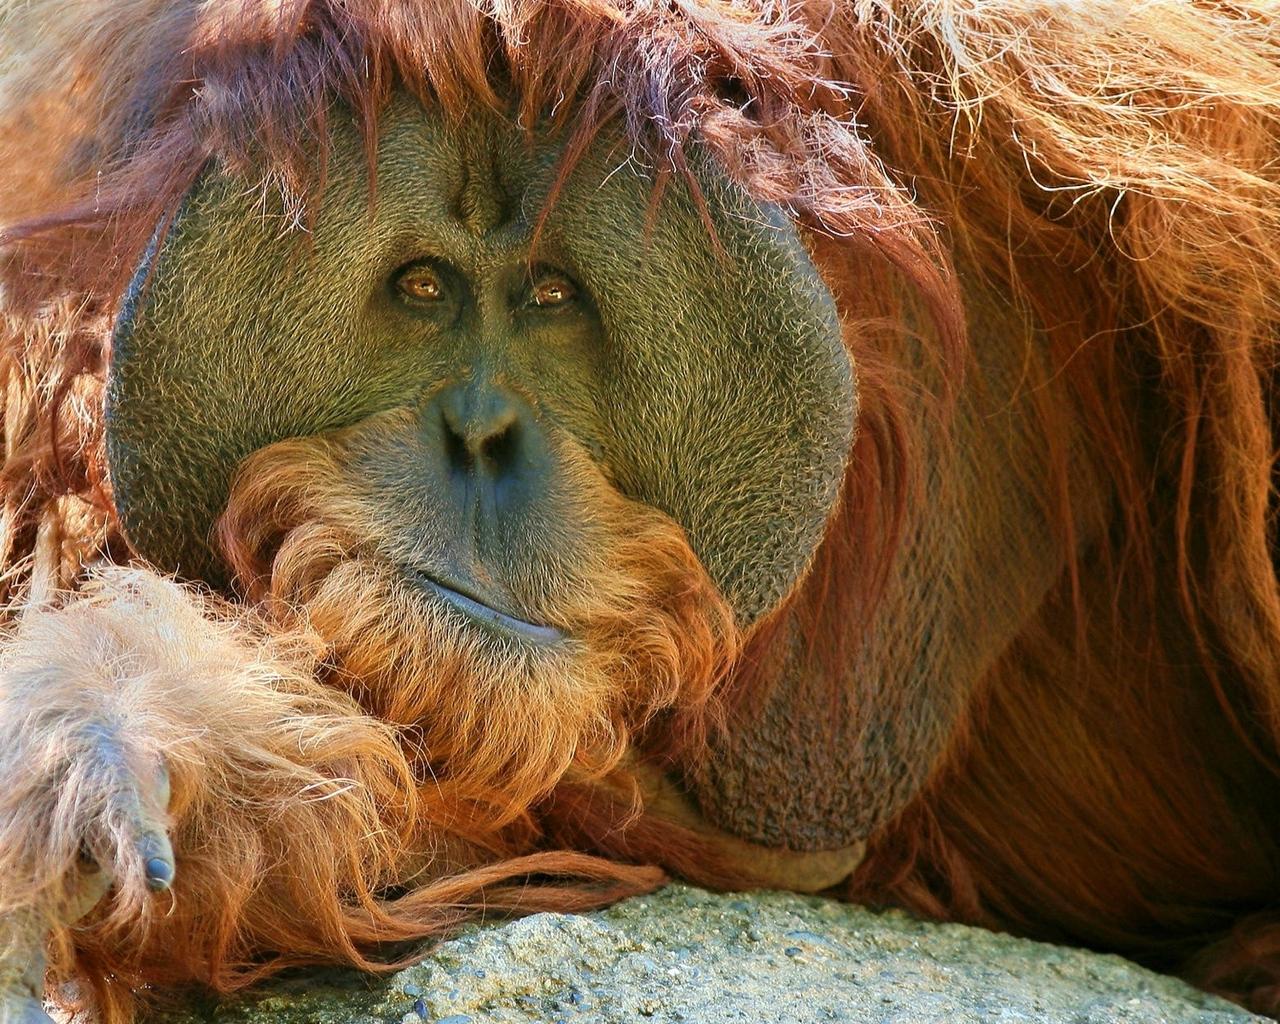 Download wallpapers orangutan, monkey, pensive standard